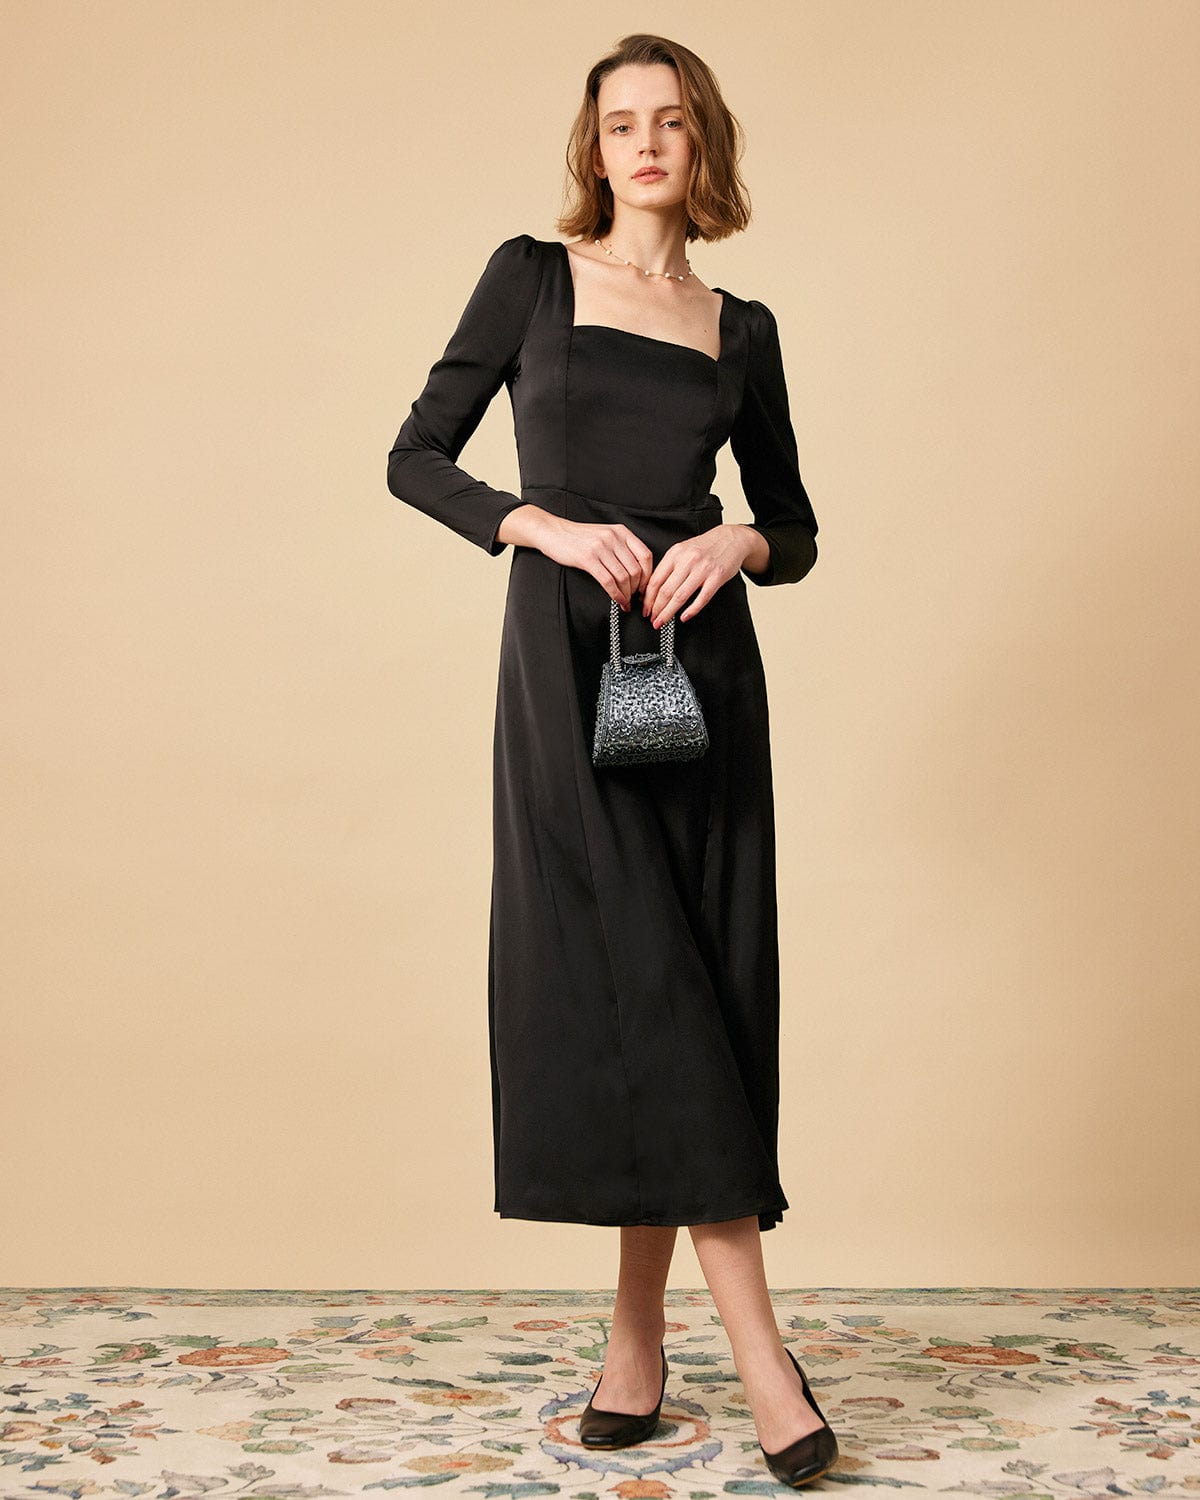 Square-neck bodycon dress - Black/Glittery - Ladies | H&M IN